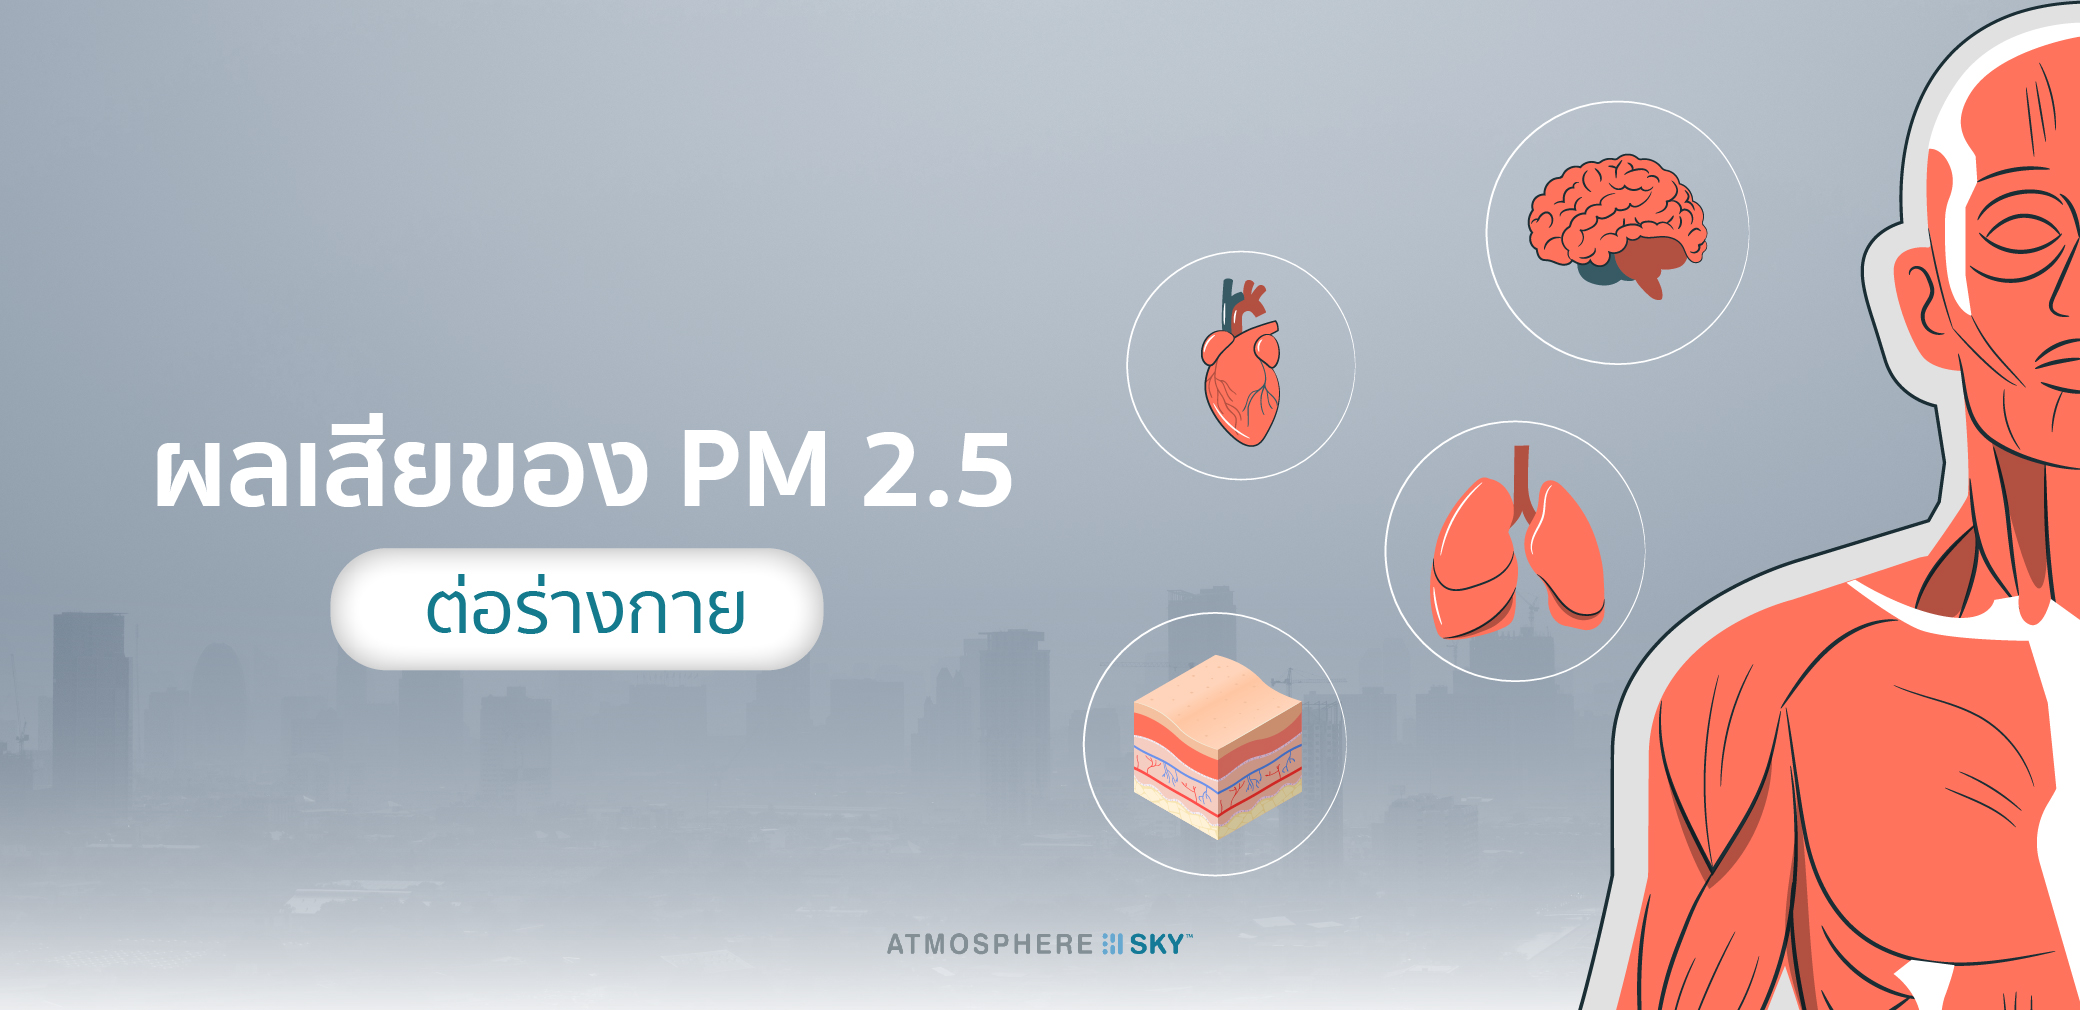 ผลเสียของ PM 2.5 ต่อร่างกาย